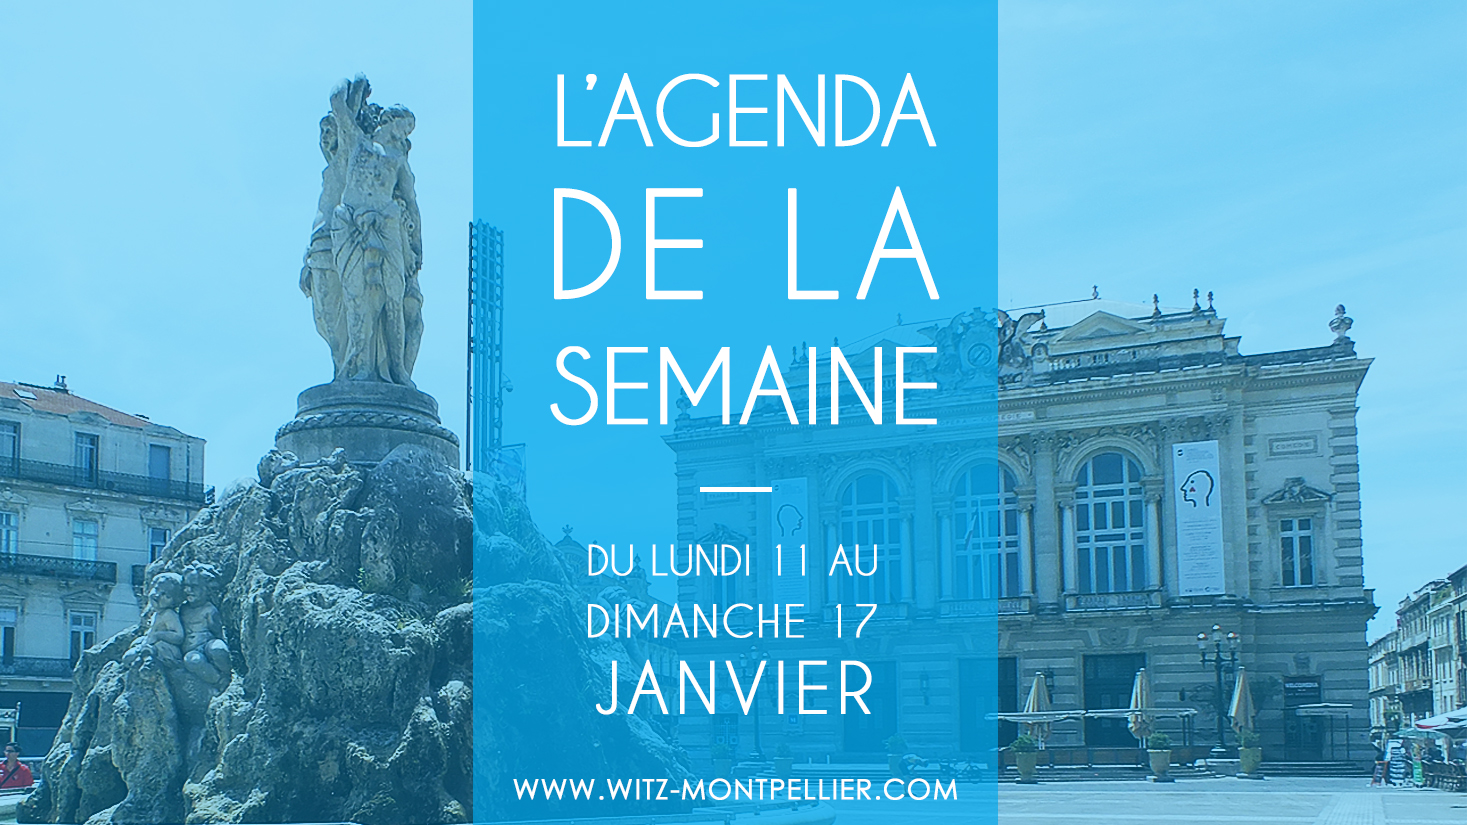 Agenda des sorties à Montpellier : du lundi 11 au dimanche 17 janvier